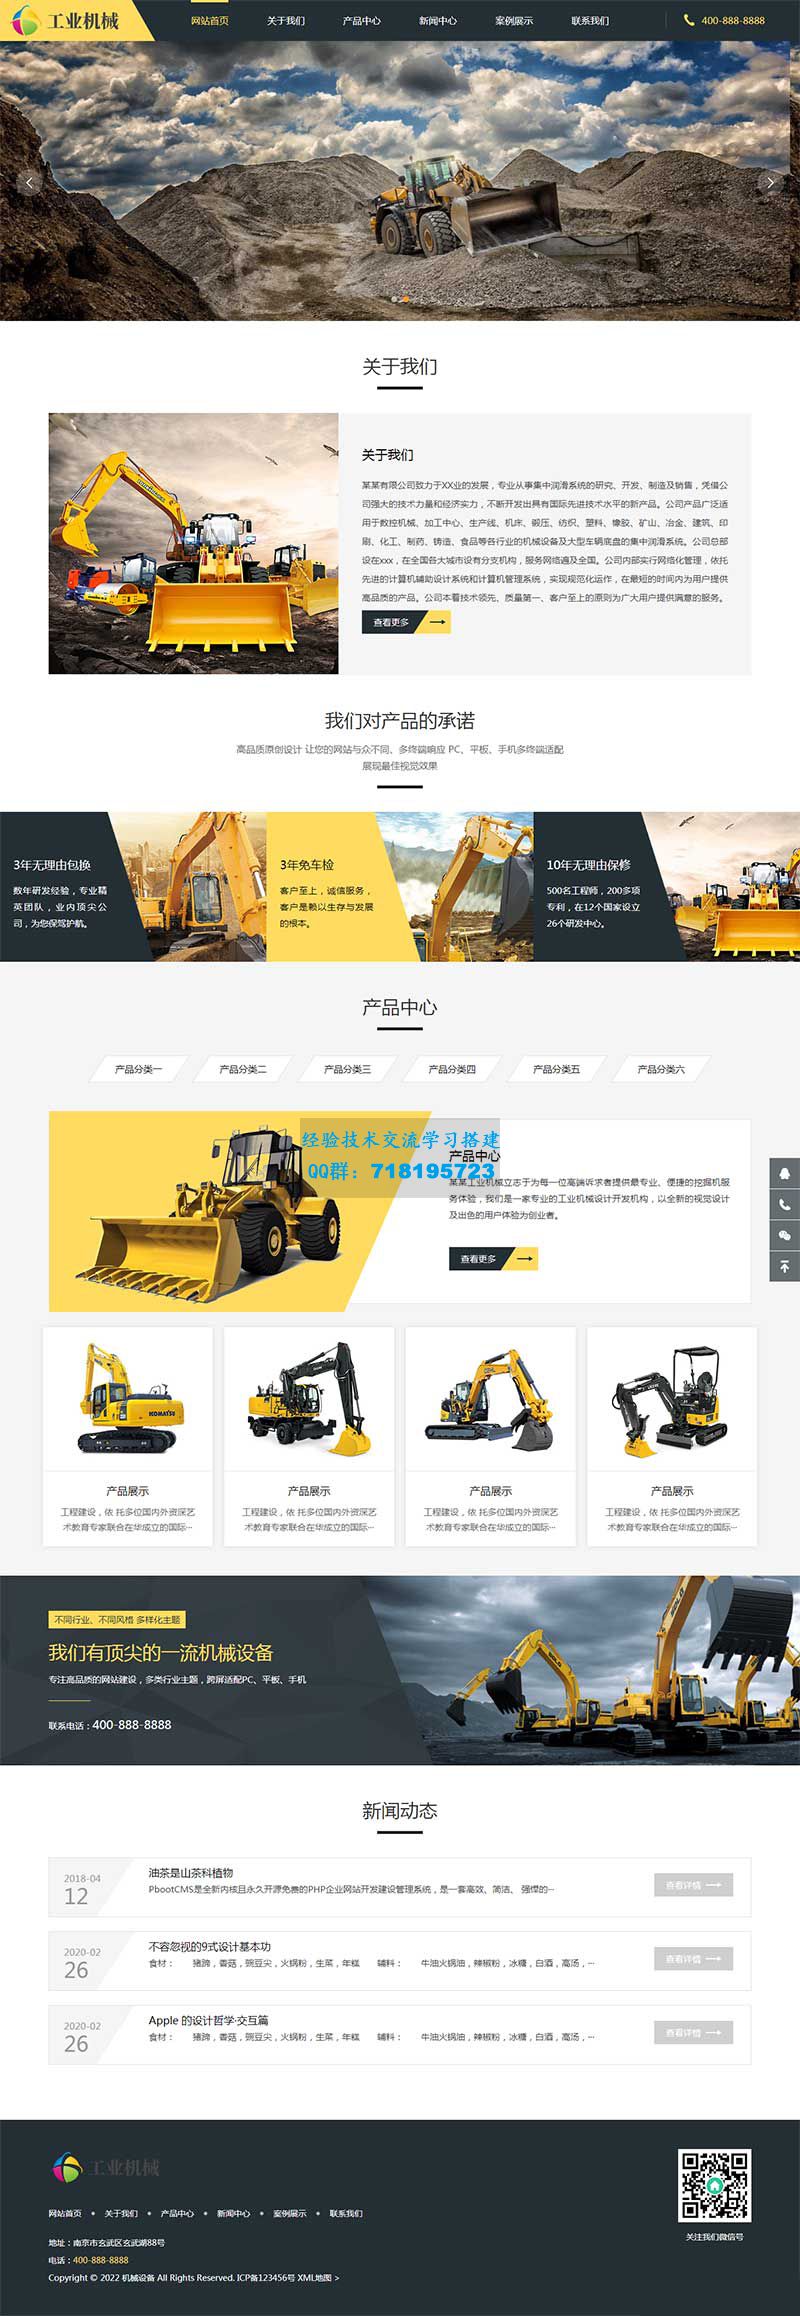     响应式挖掘机设备网站源码 黄色大型采矿设备pbootcms网站模板
